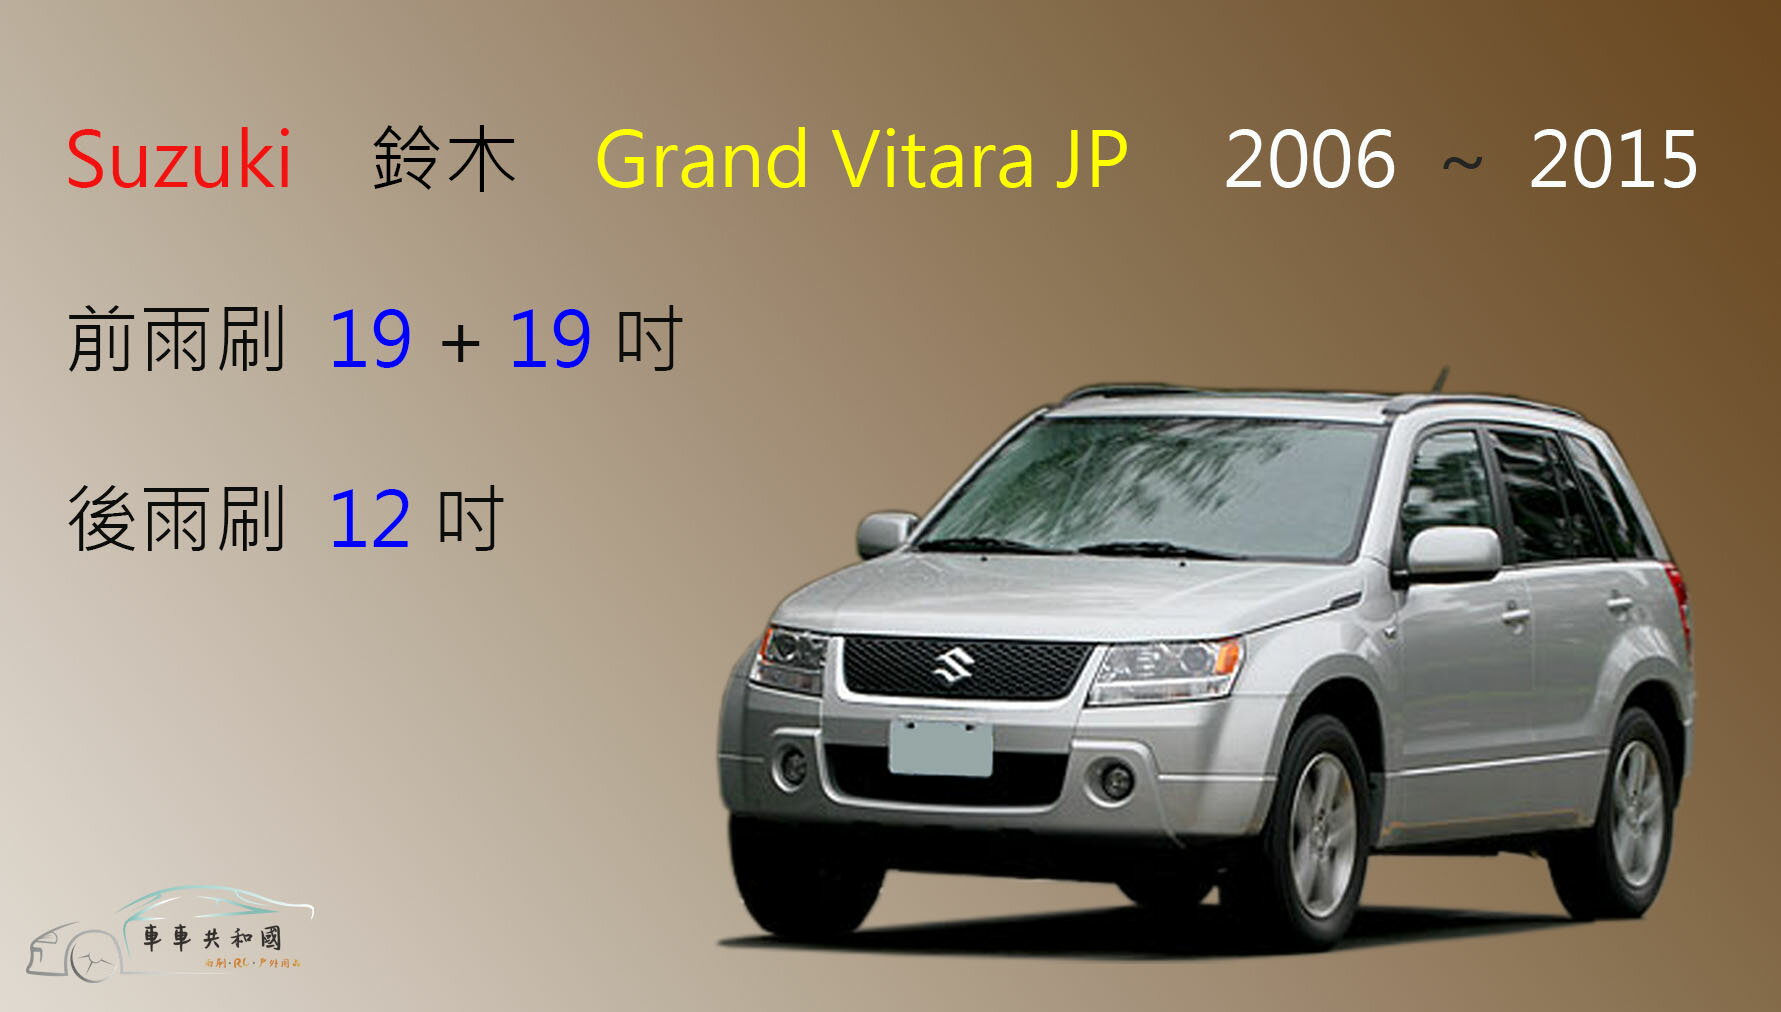 【車車共和國】Suzuki 鈴木 Grand Vitara JP 矽膠雨刷 軟骨雨刷 前雨刷 後雨刷 雨刷錠